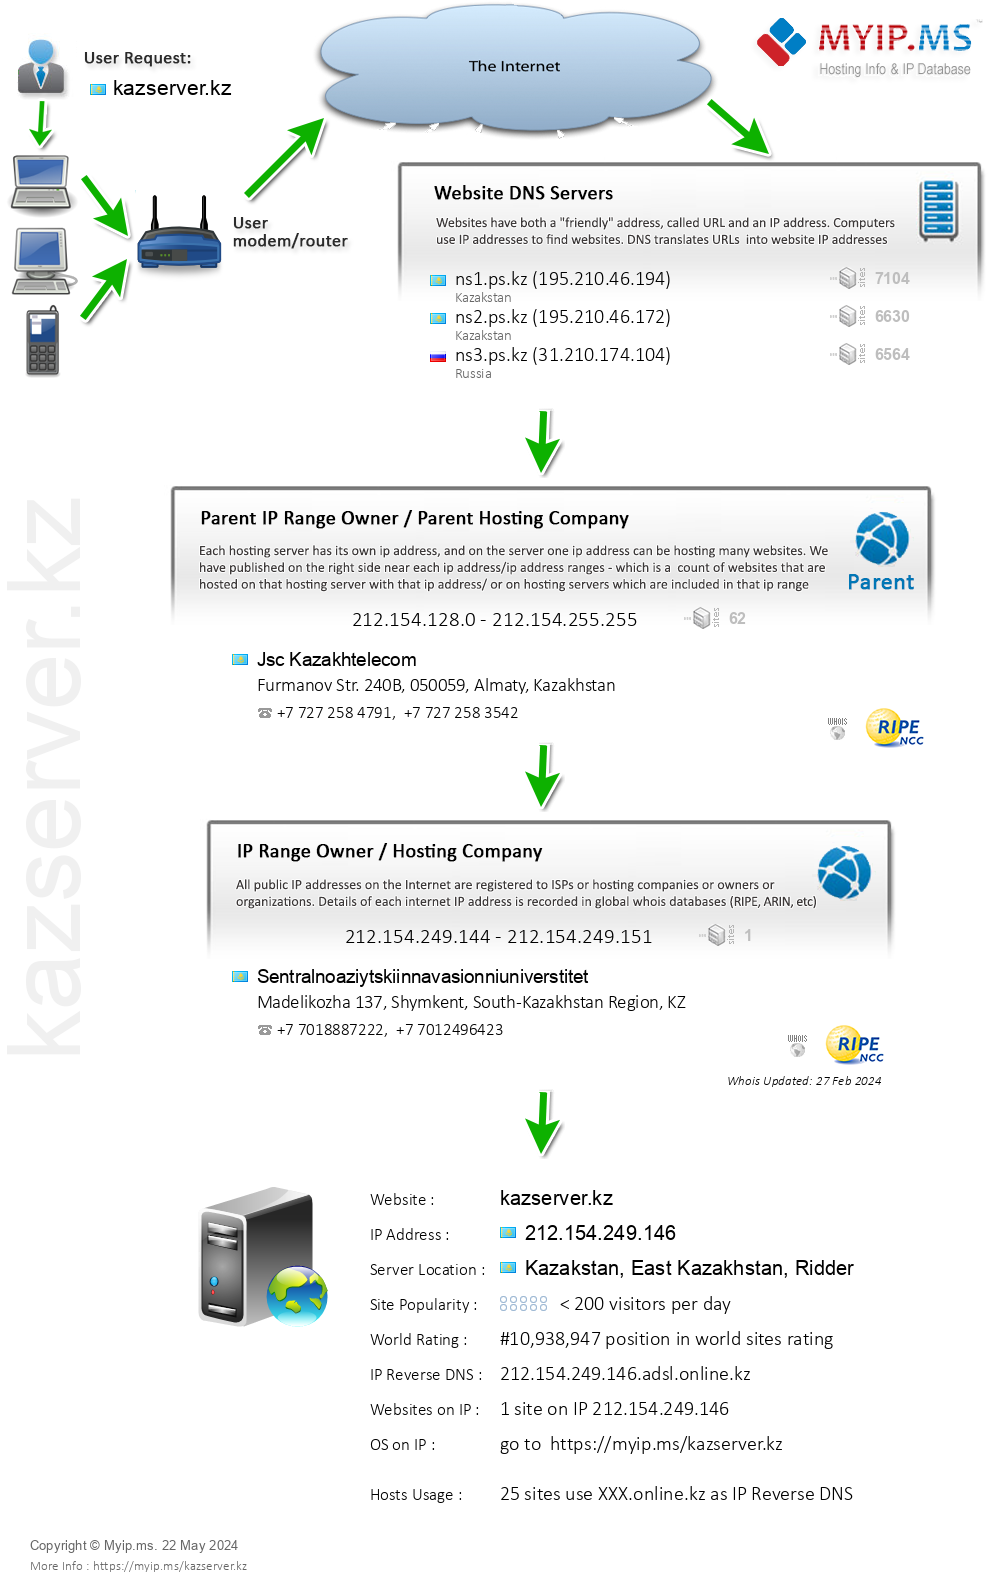 Kazserver.kz - Website Hosting Visual IP Diagram